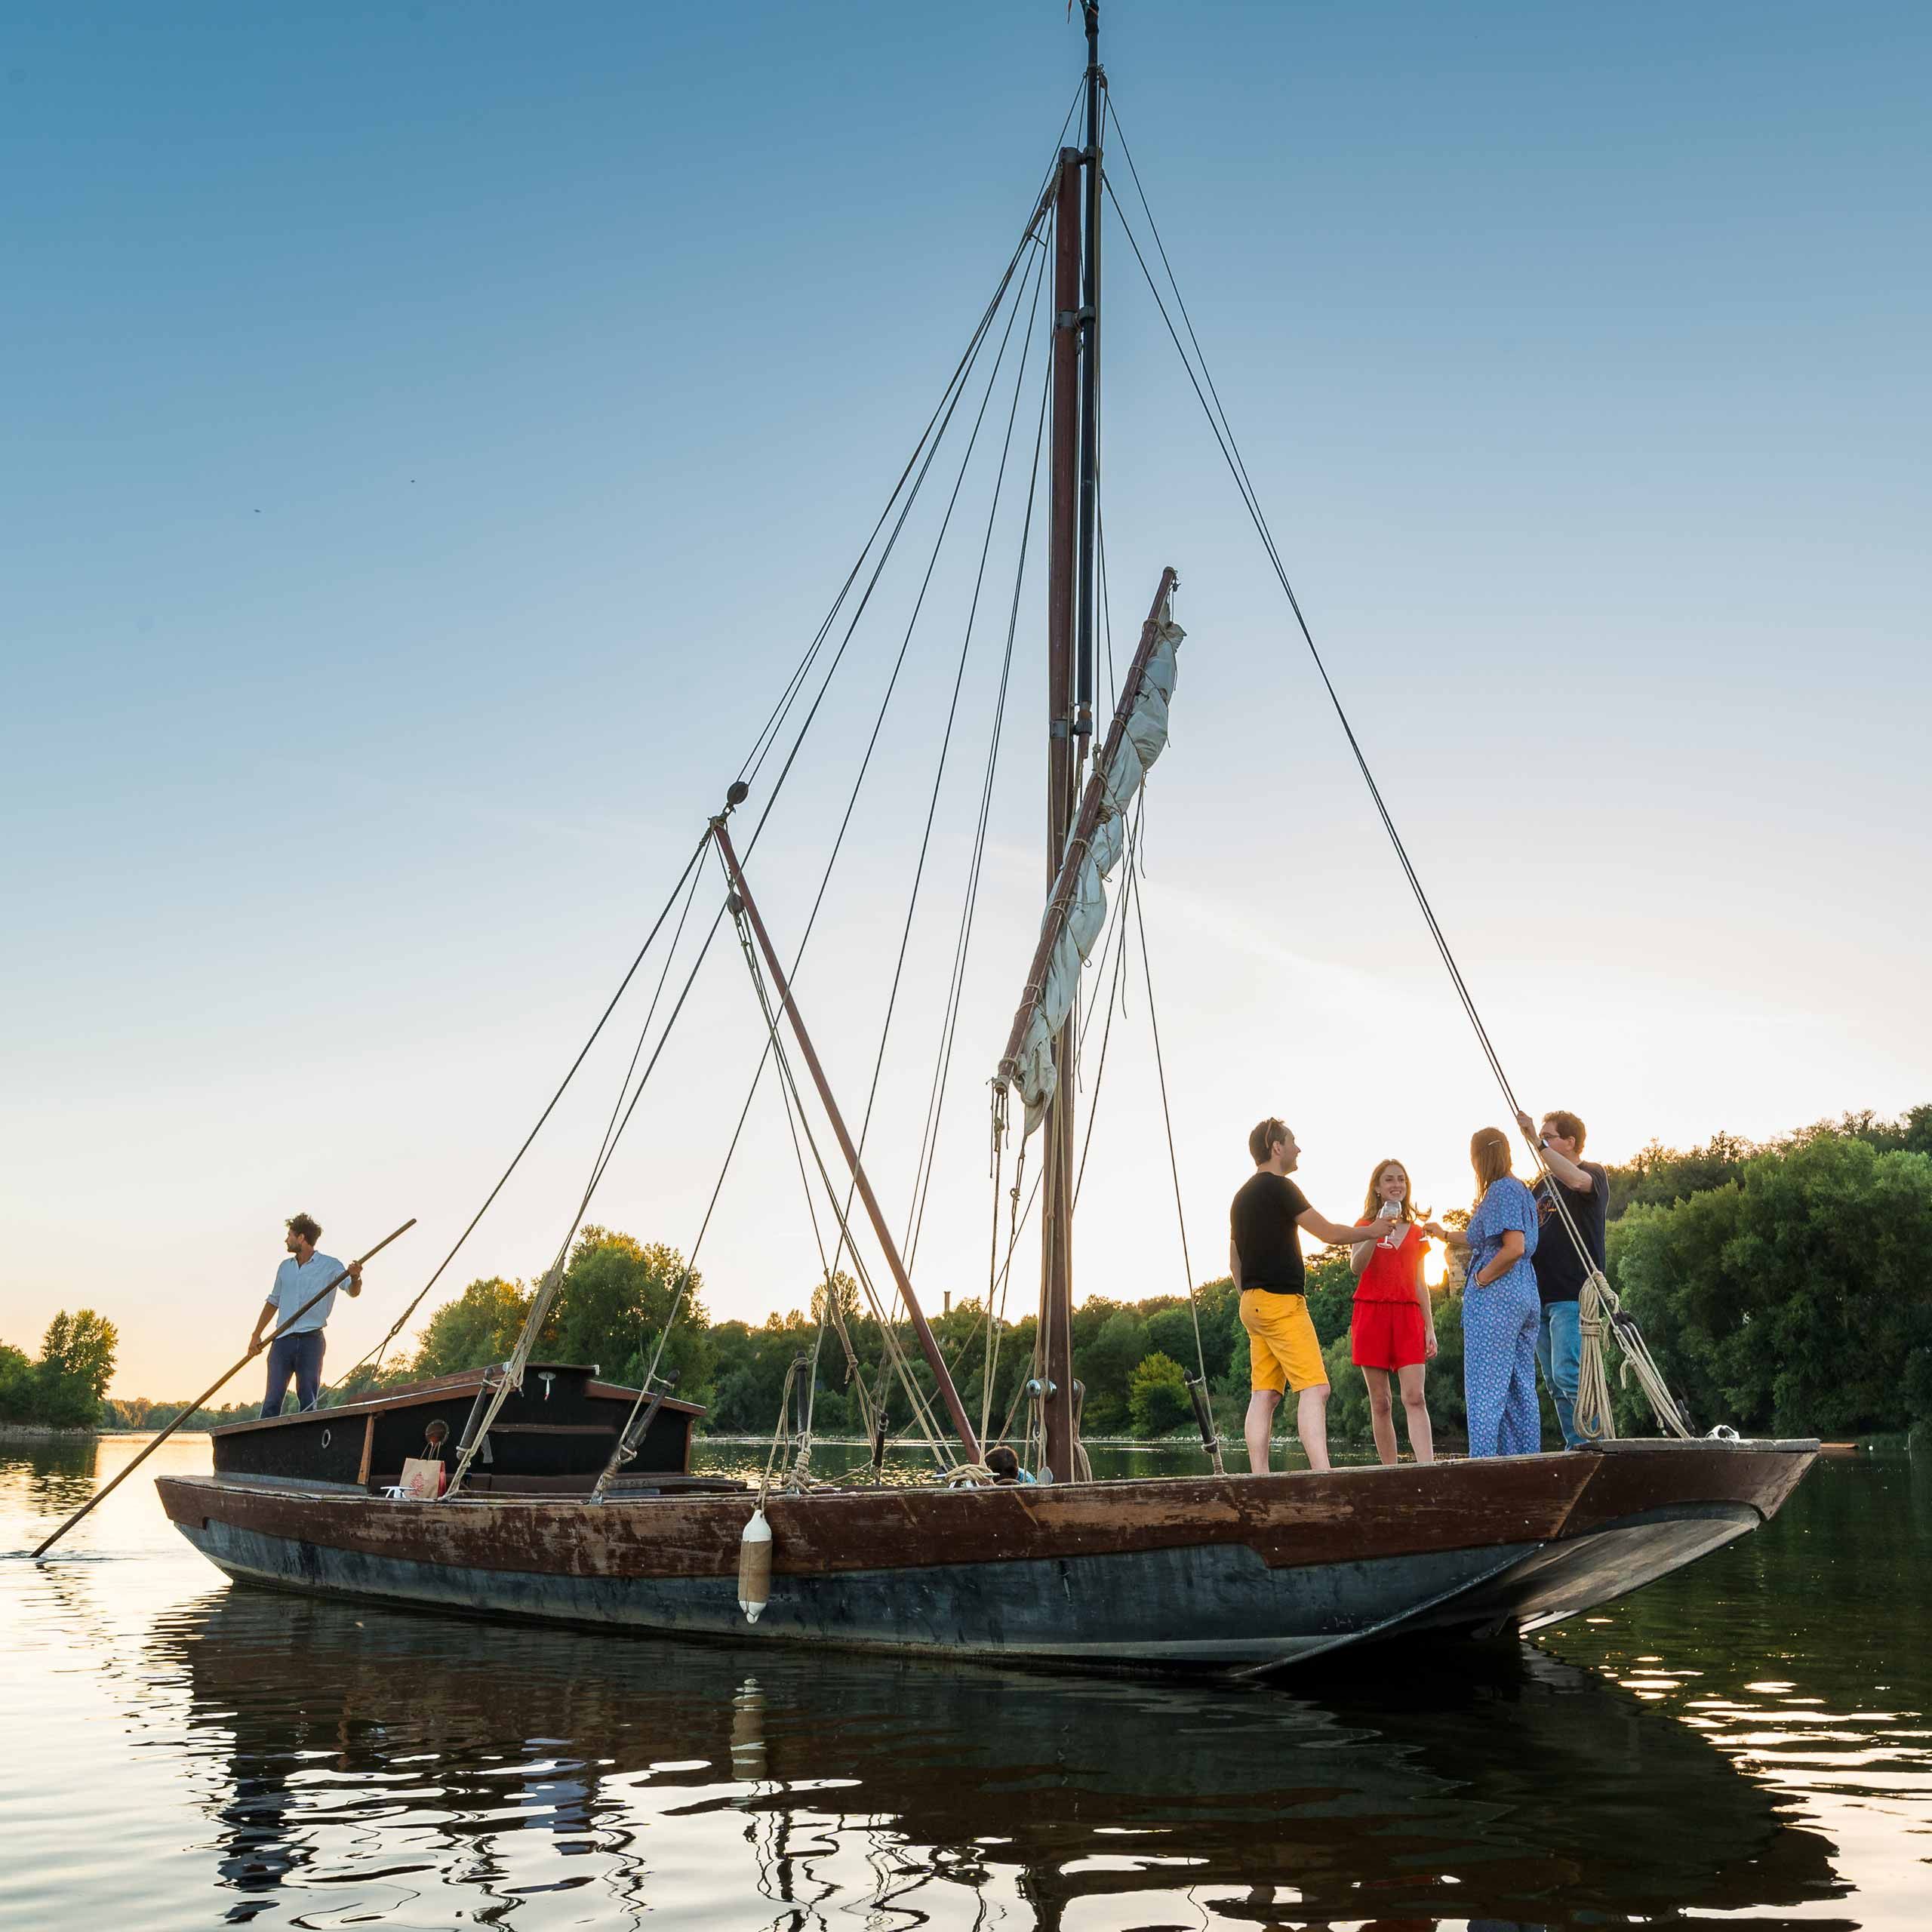 Balades en bateau traditionnel sur la Loire